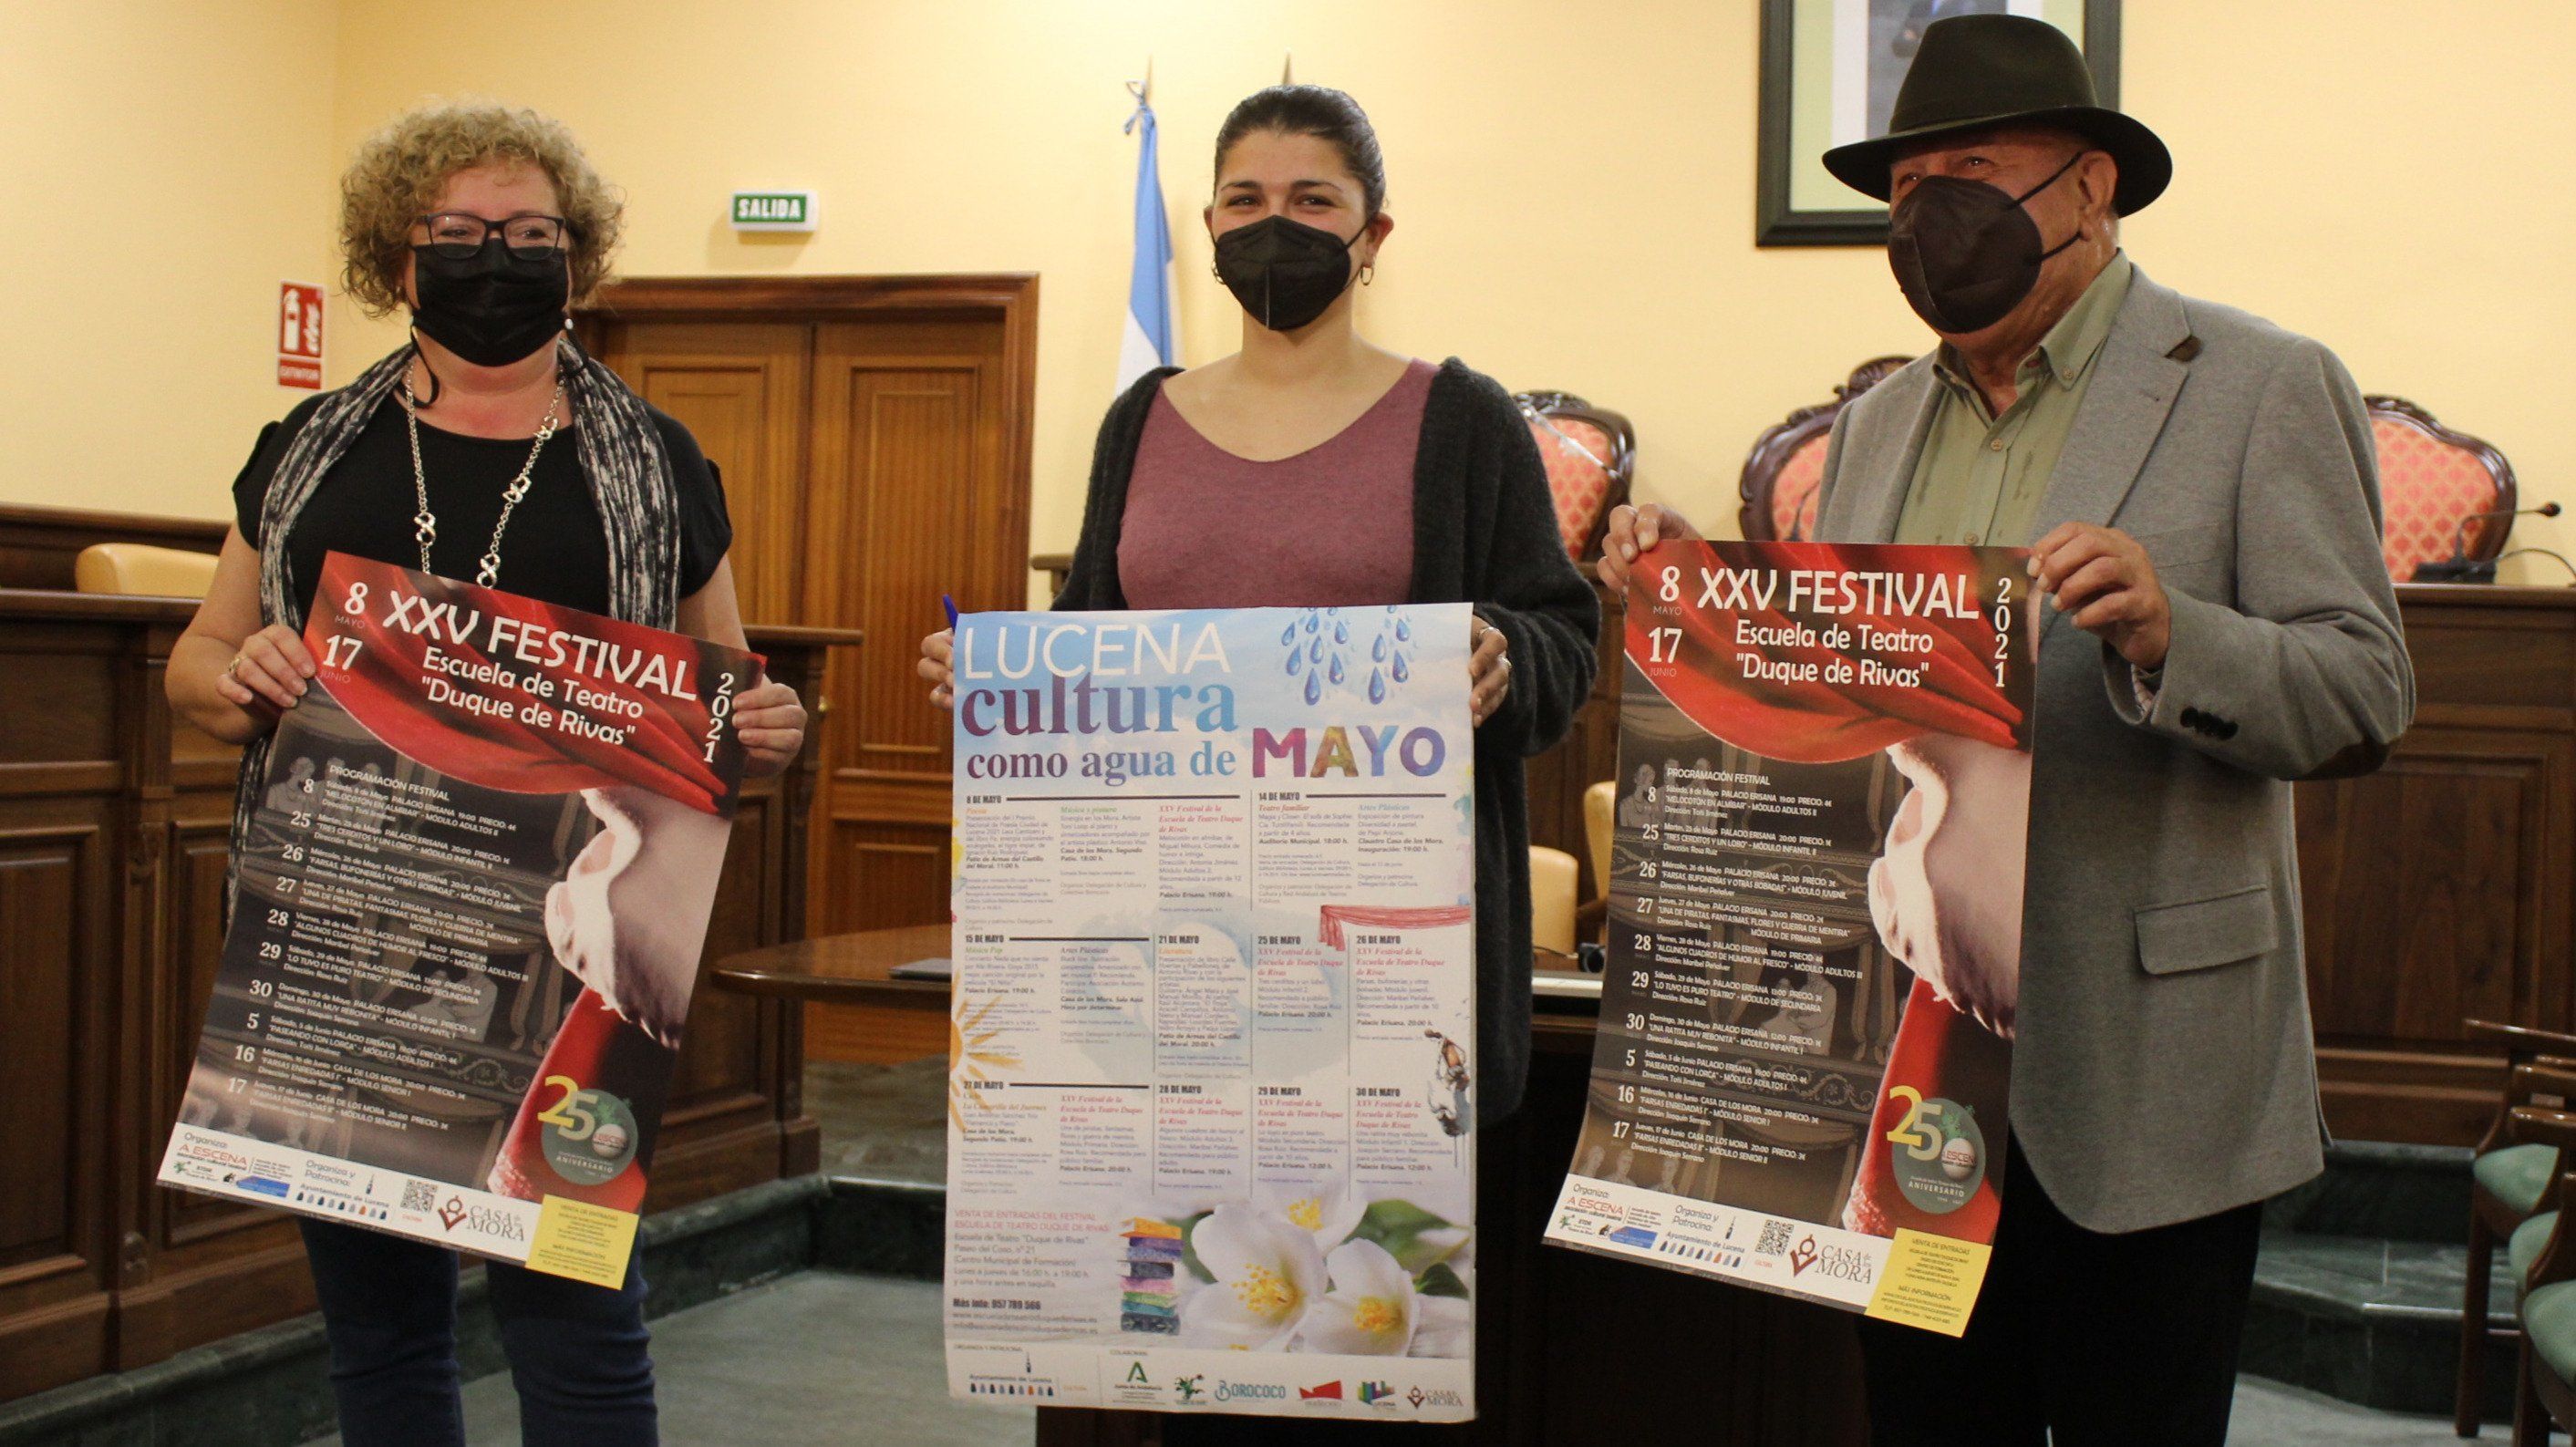  Toñi Jiménez, Mamen Beato e Isidro Arroyo en la presentación de las actividades culturales para el mes de mayo en Lucena 